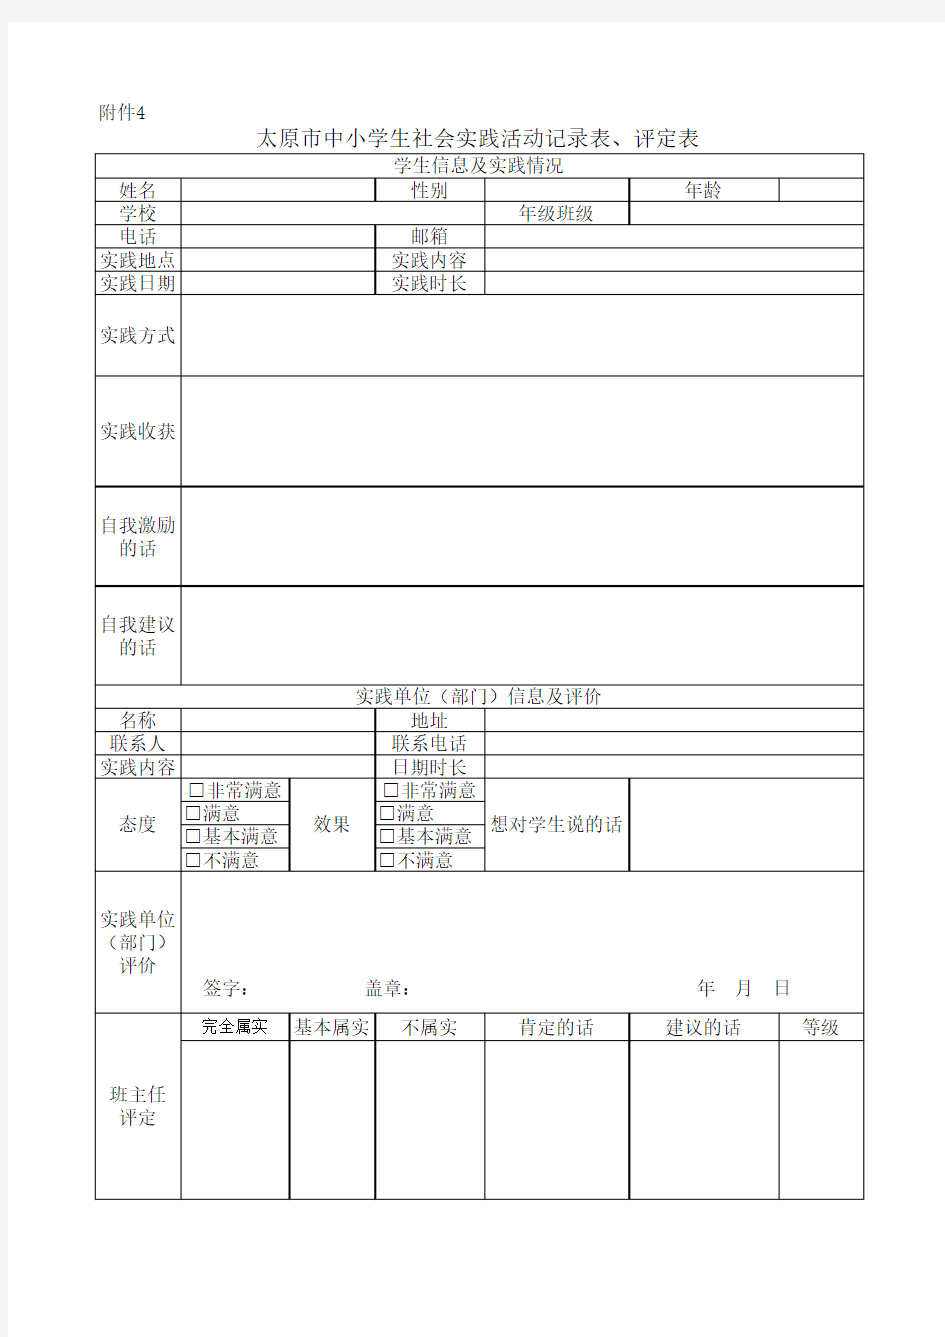 太原市中小学生社会实践活动记录表、评定表